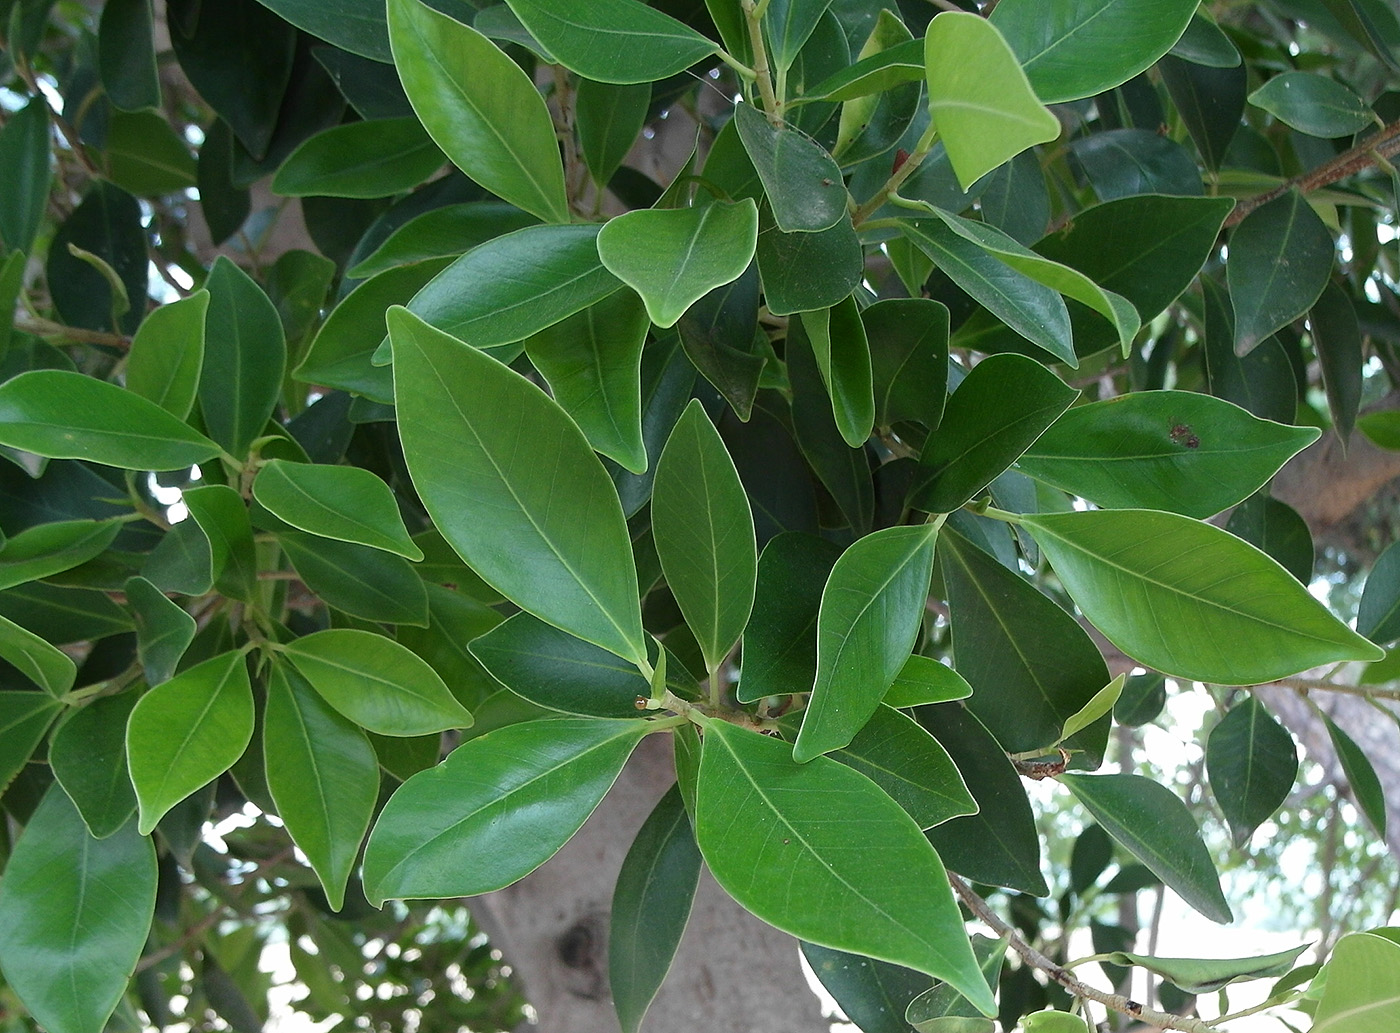 Image of genus Ficus specimen.